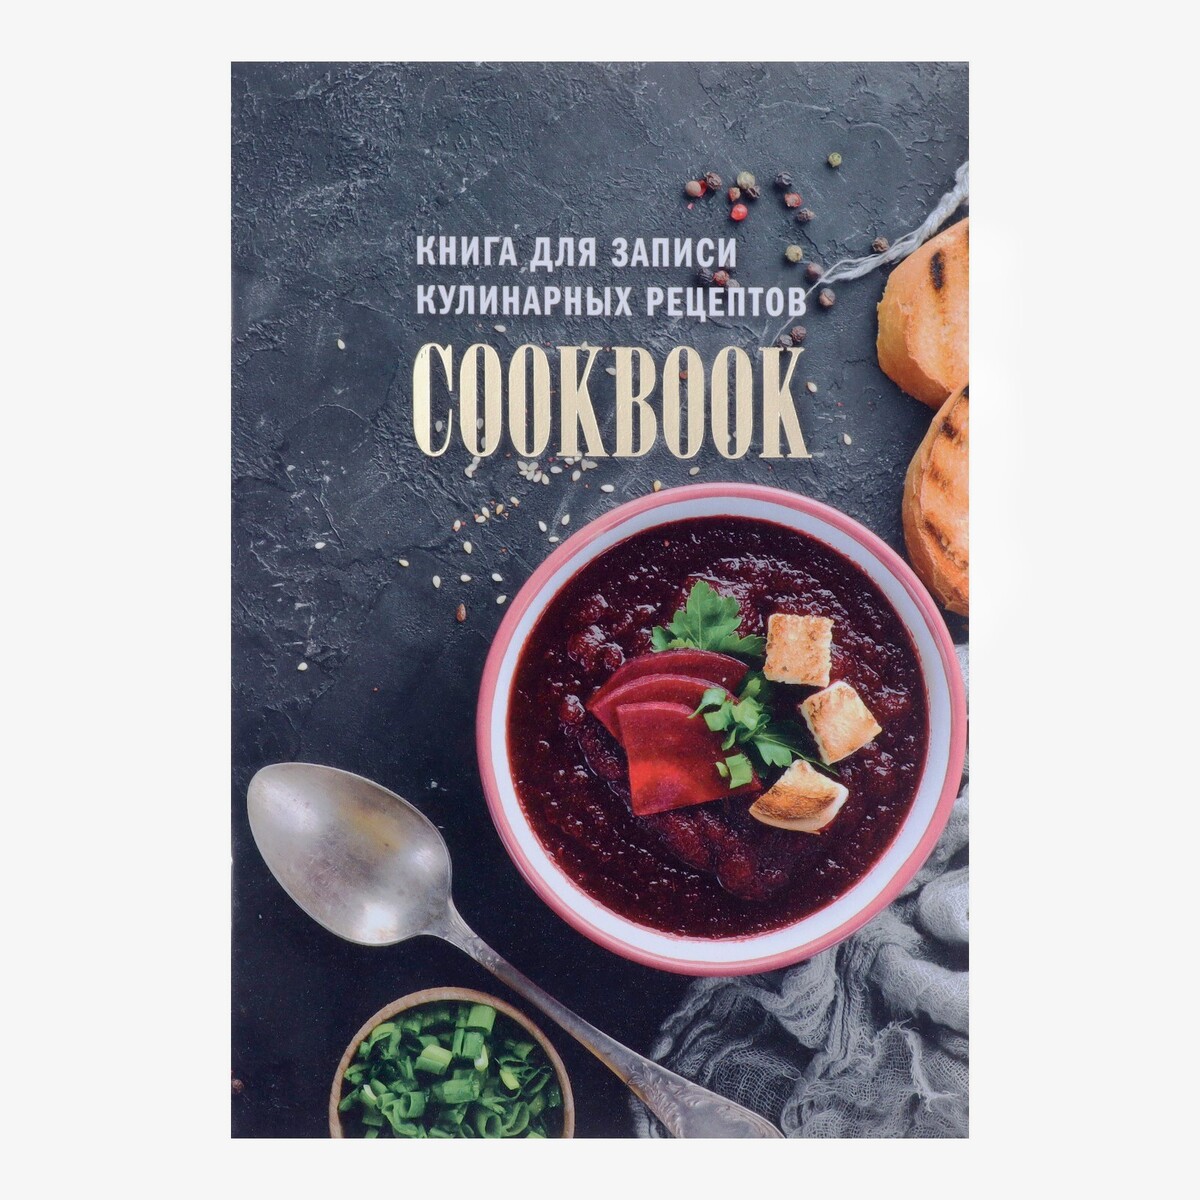 Книга для записи кулинарных рецептов а5, 48 листов искусство на десерт книга рецептов от уникального кондитера современности